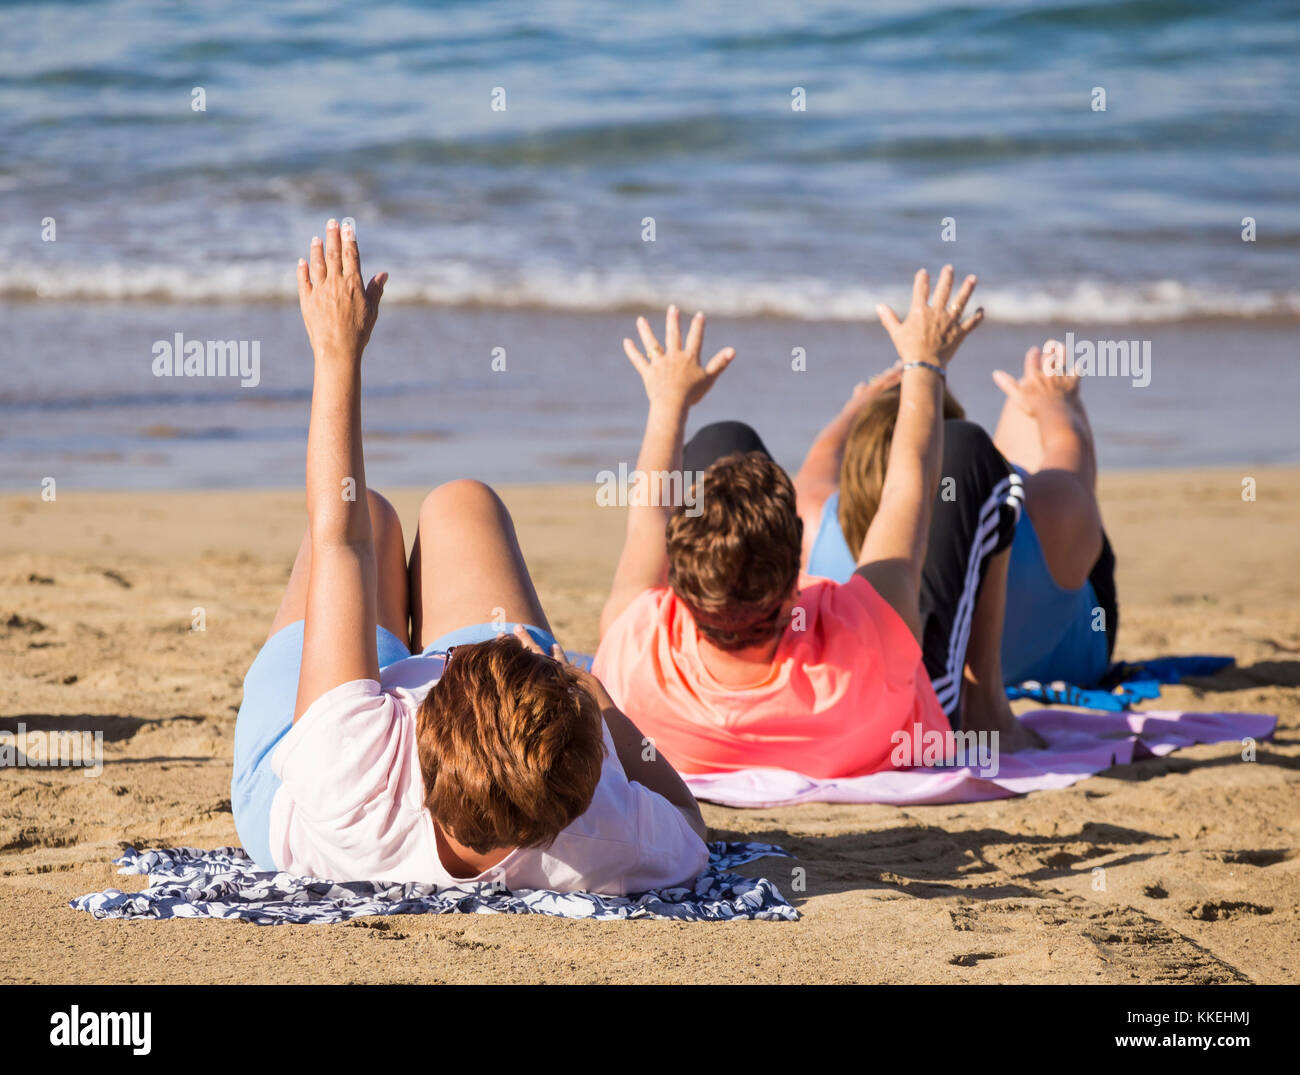 Ältere spanische Frauen dehnen sich täglich beim Yoga/Stretching am Strand. Stockfoto